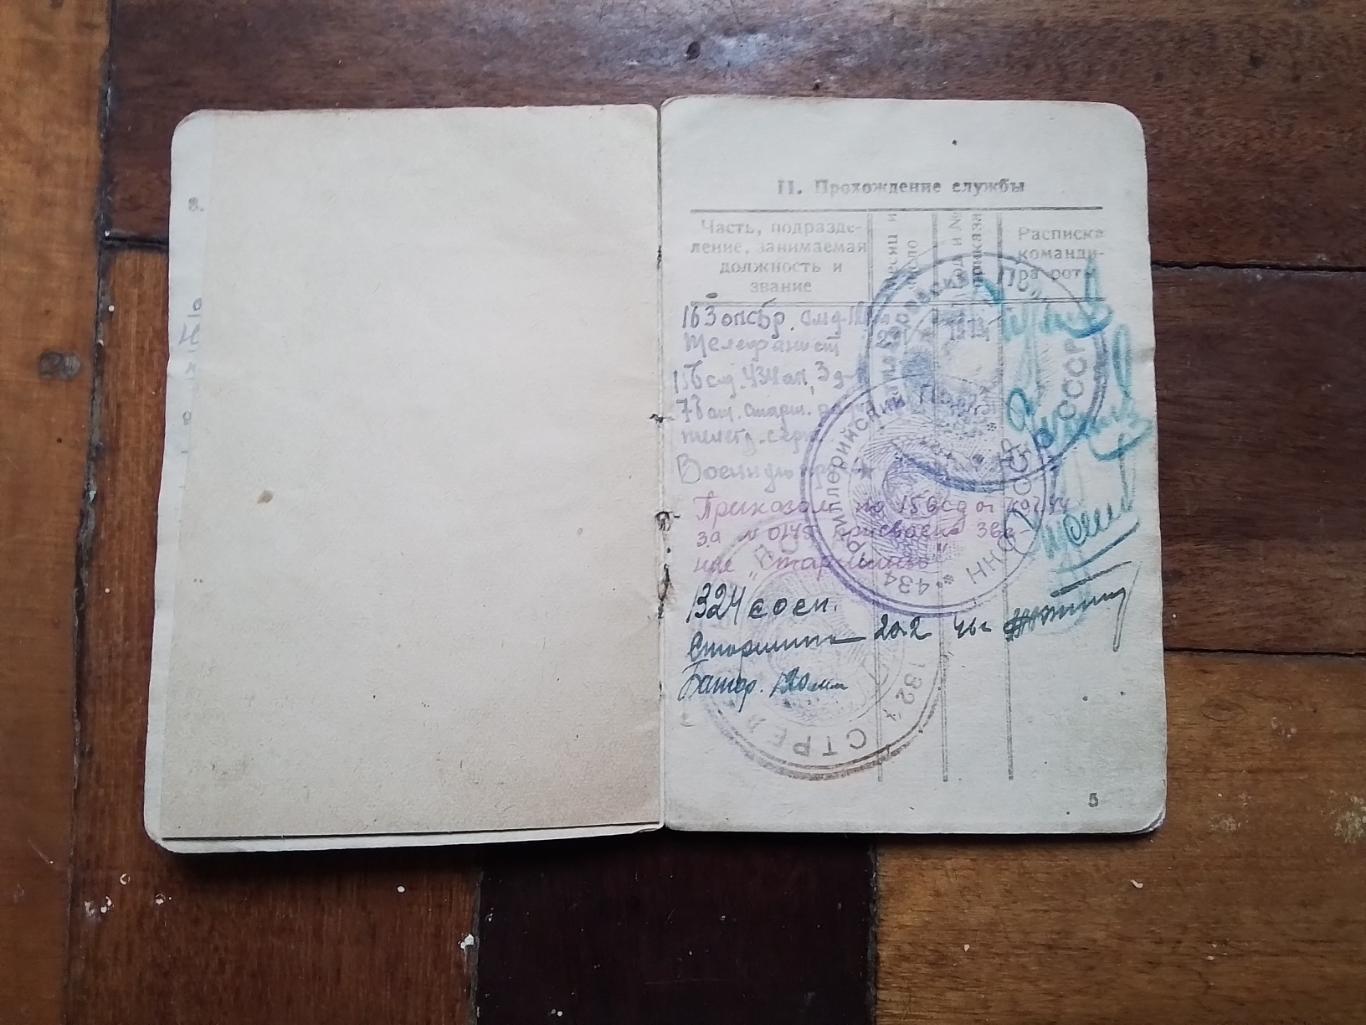 Военный билет 1943 Телеграфист Кавалер Красной Звезды и Ордена Славы 3 ст. Пенза 6